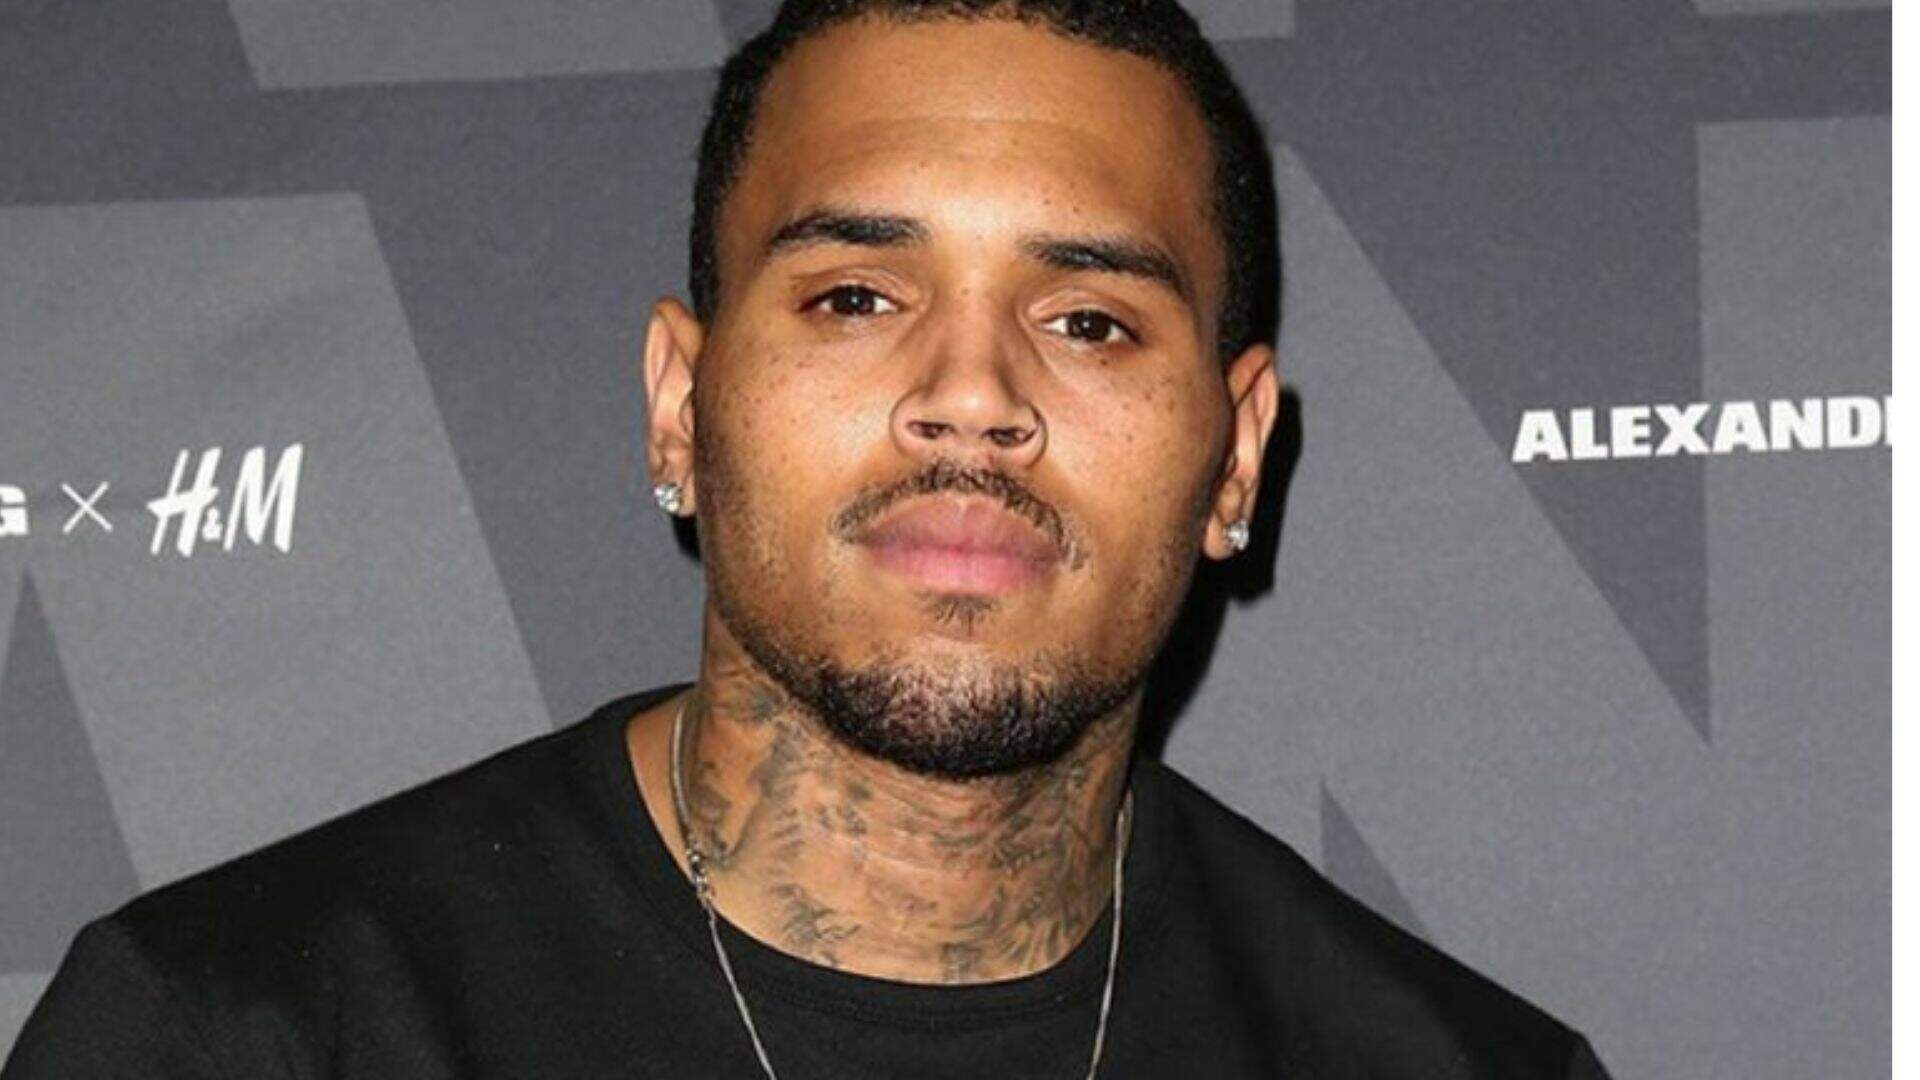 Chris Brown se incomoda com postura de fã durante show e toma atitude polêmica